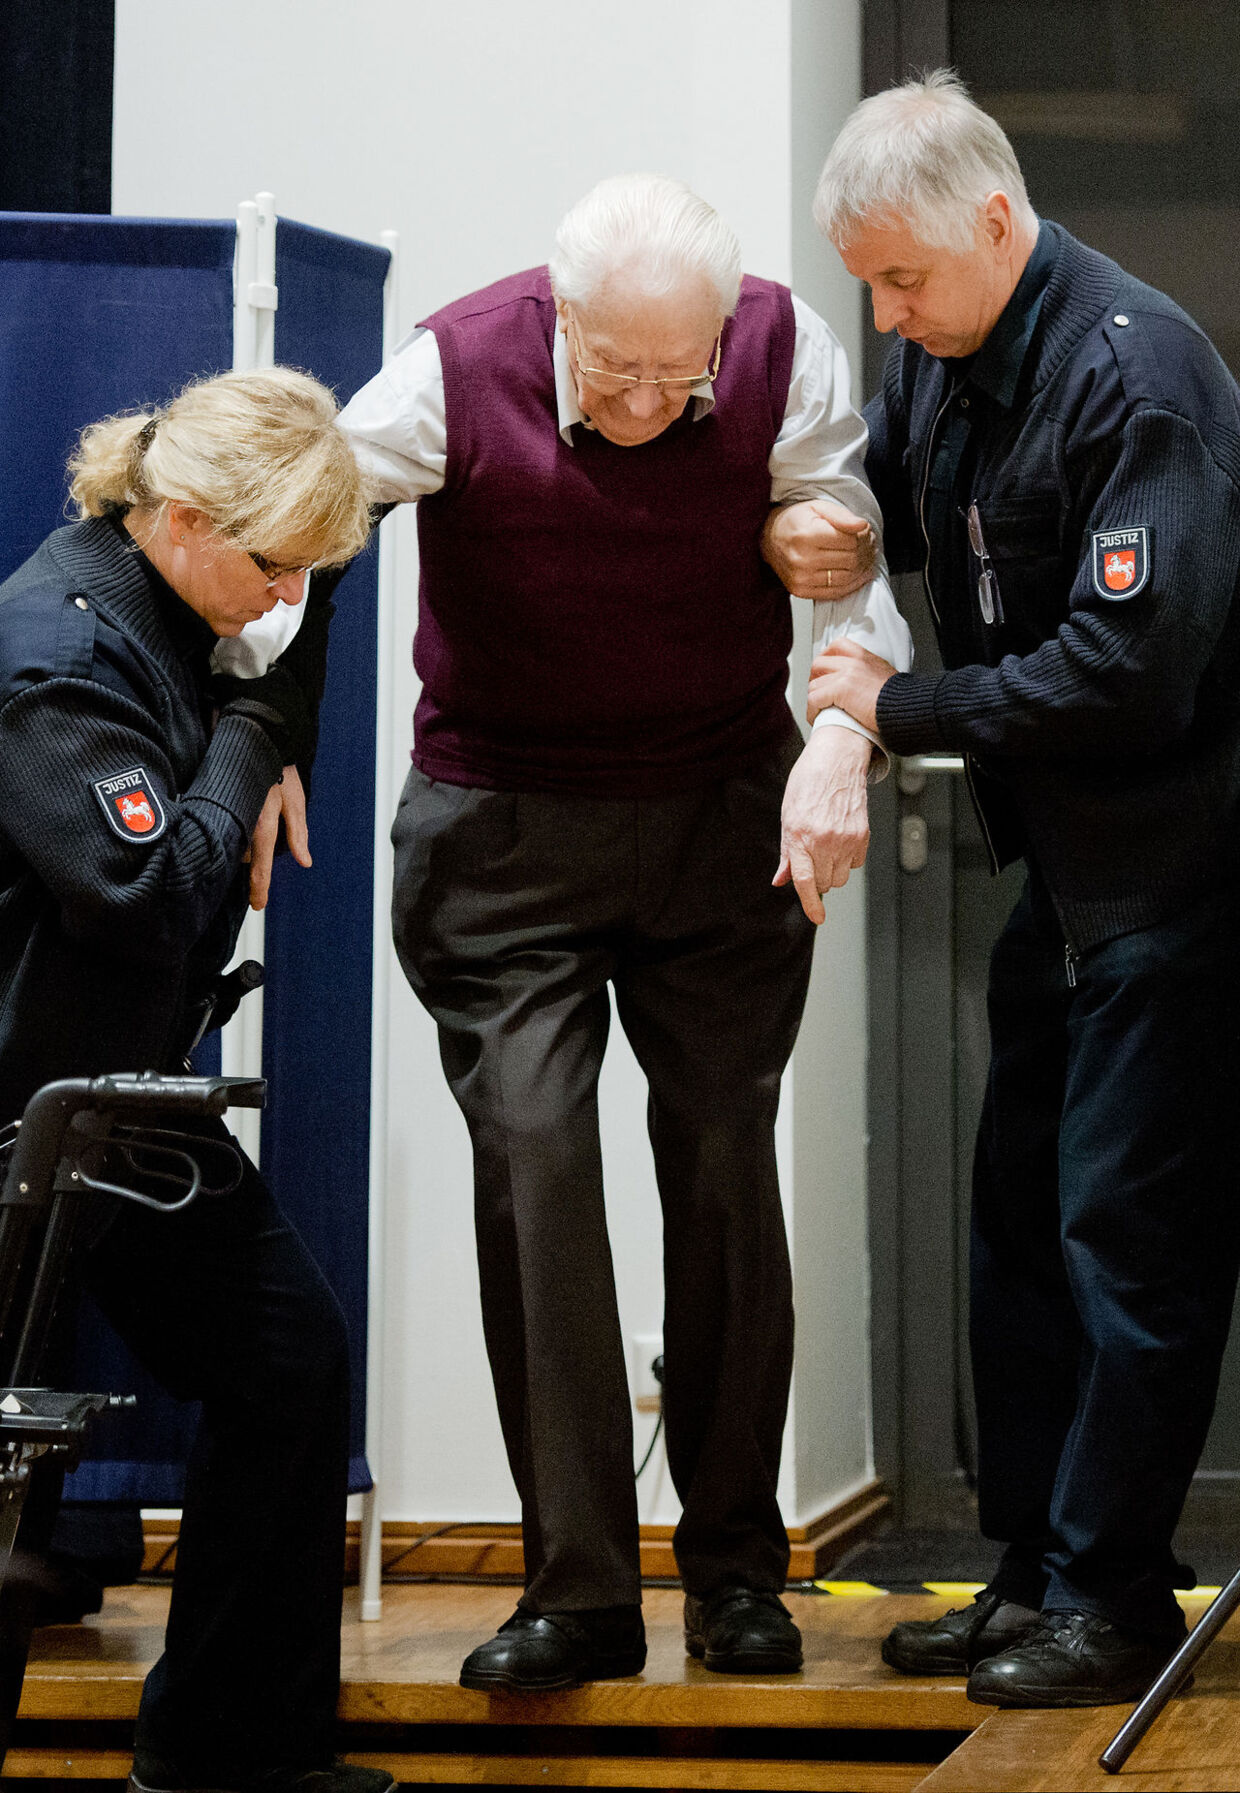 I sin appel slog den 96-årige krigsforbryder Oskar Gröning på sit skrøbelige helbred.&nbsp;